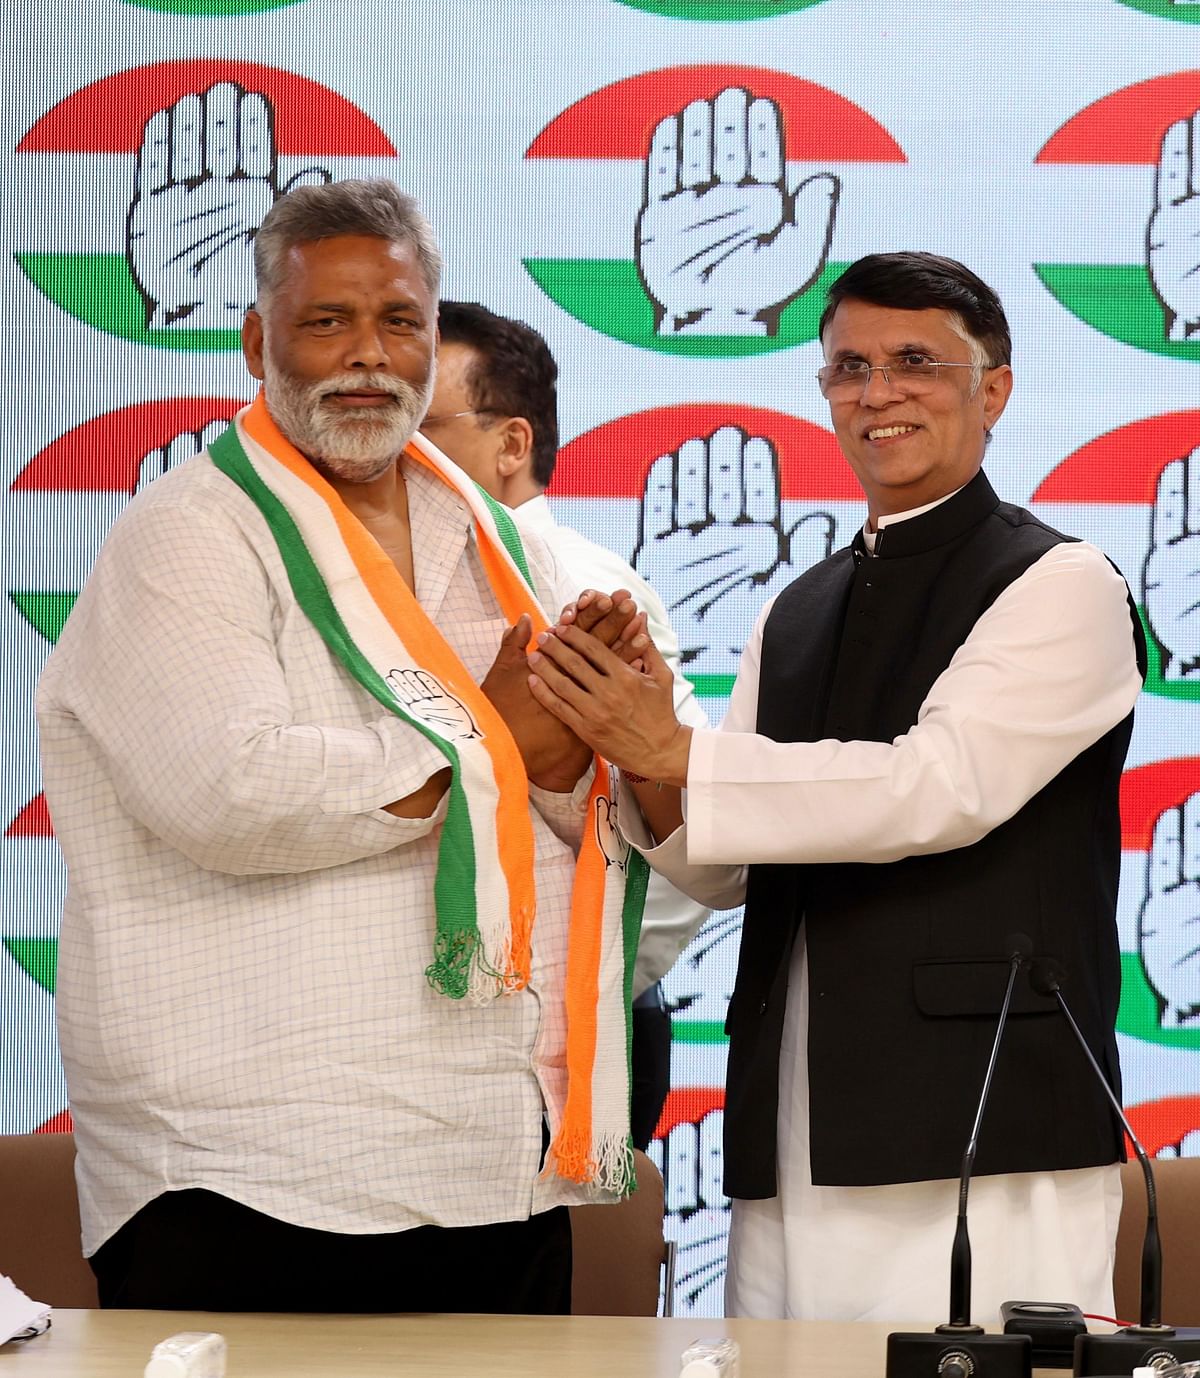 Pappu Yadav joins Congress: कांग्रेस में शामिल होने से पहले पप्पू यादव ने लालू यादव और तेजस्वी यादव से मुलाकात की थी.